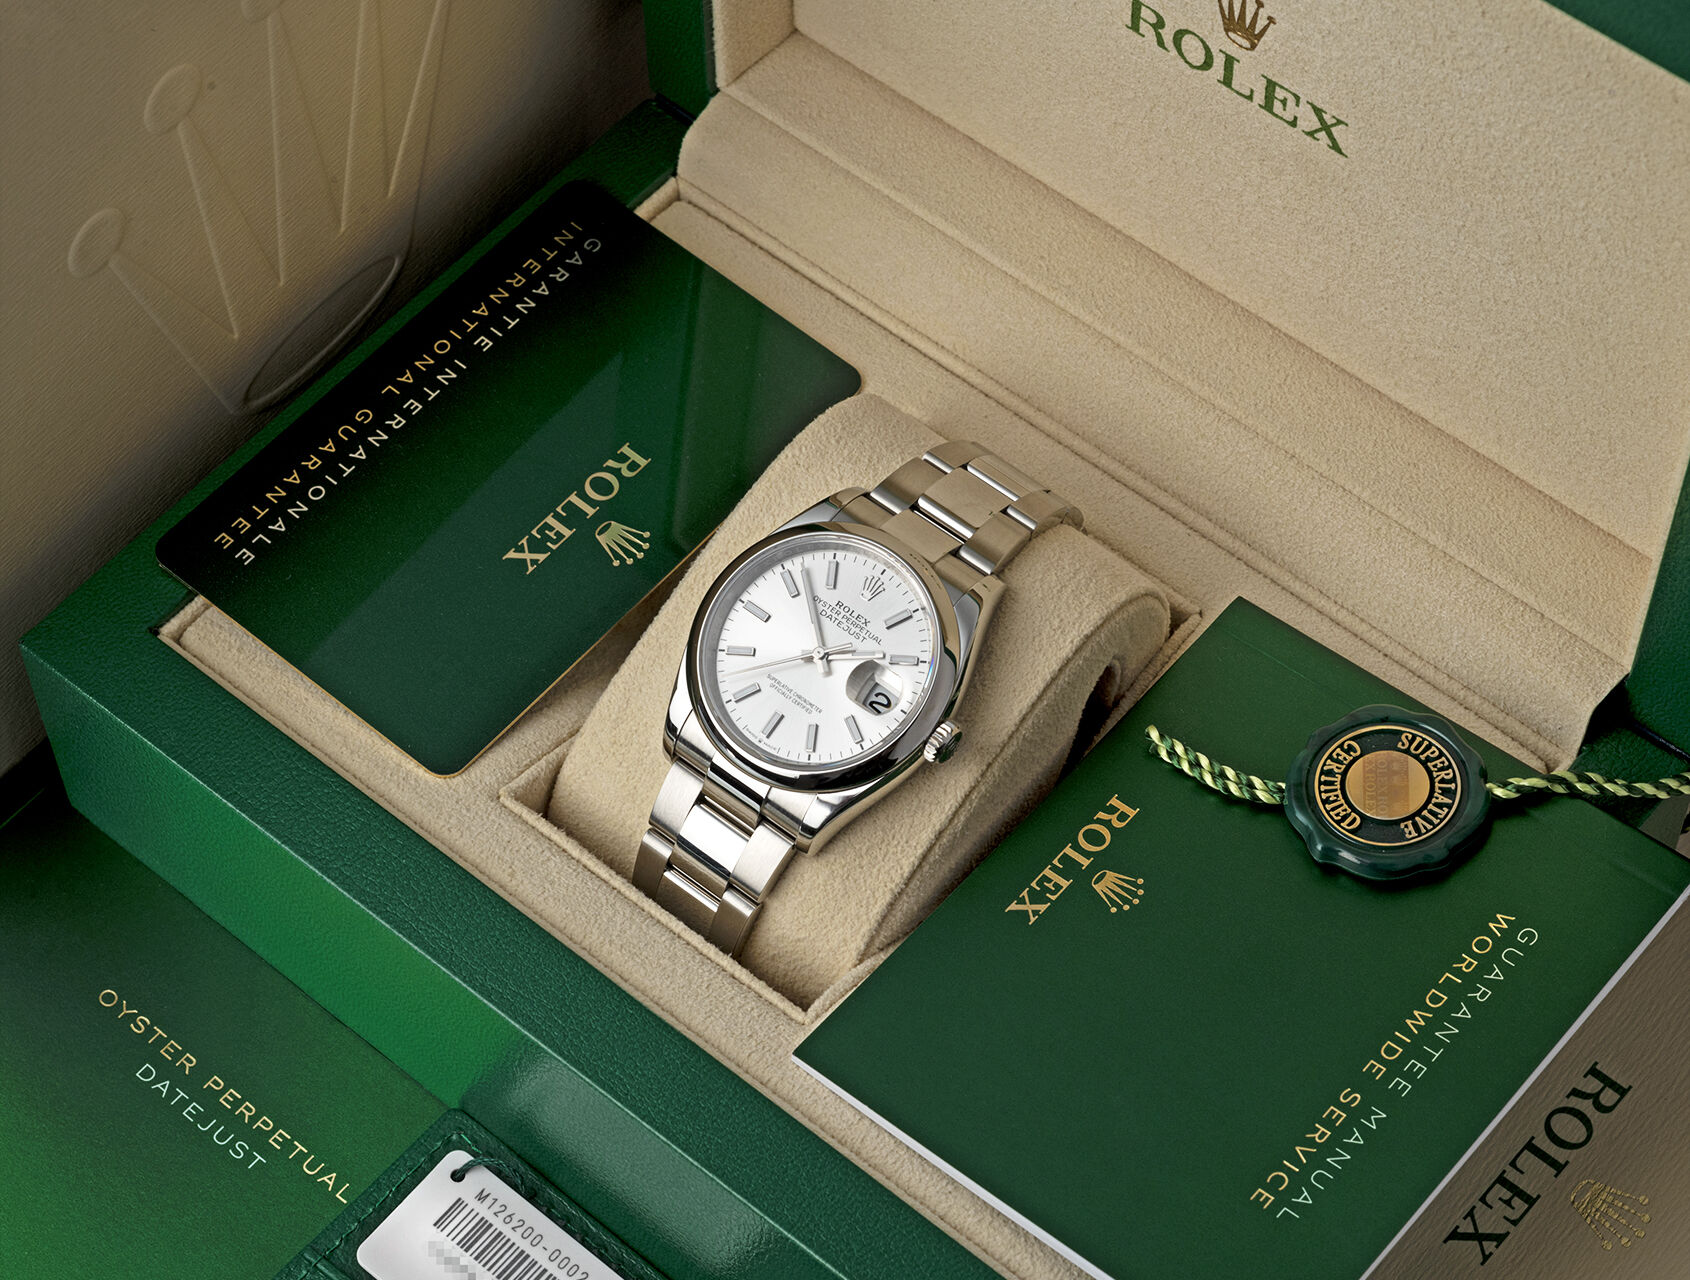 ref 126200 | 126200 - Box & Certificate | Rolex Datejust 36